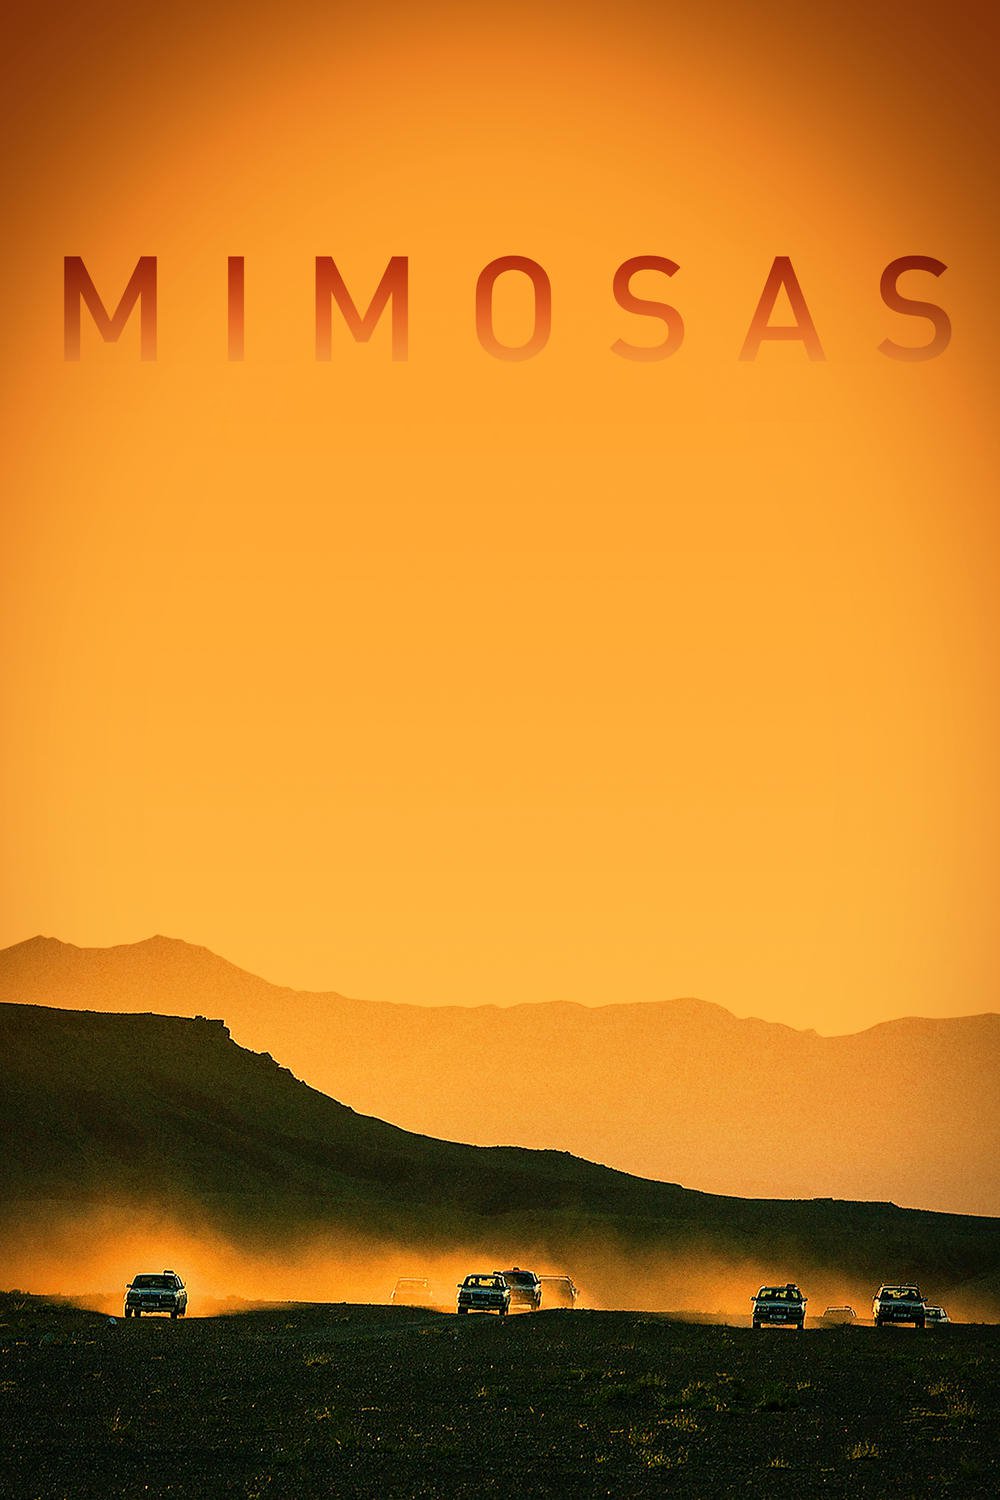 Mimosas, la voie de l'Atlas